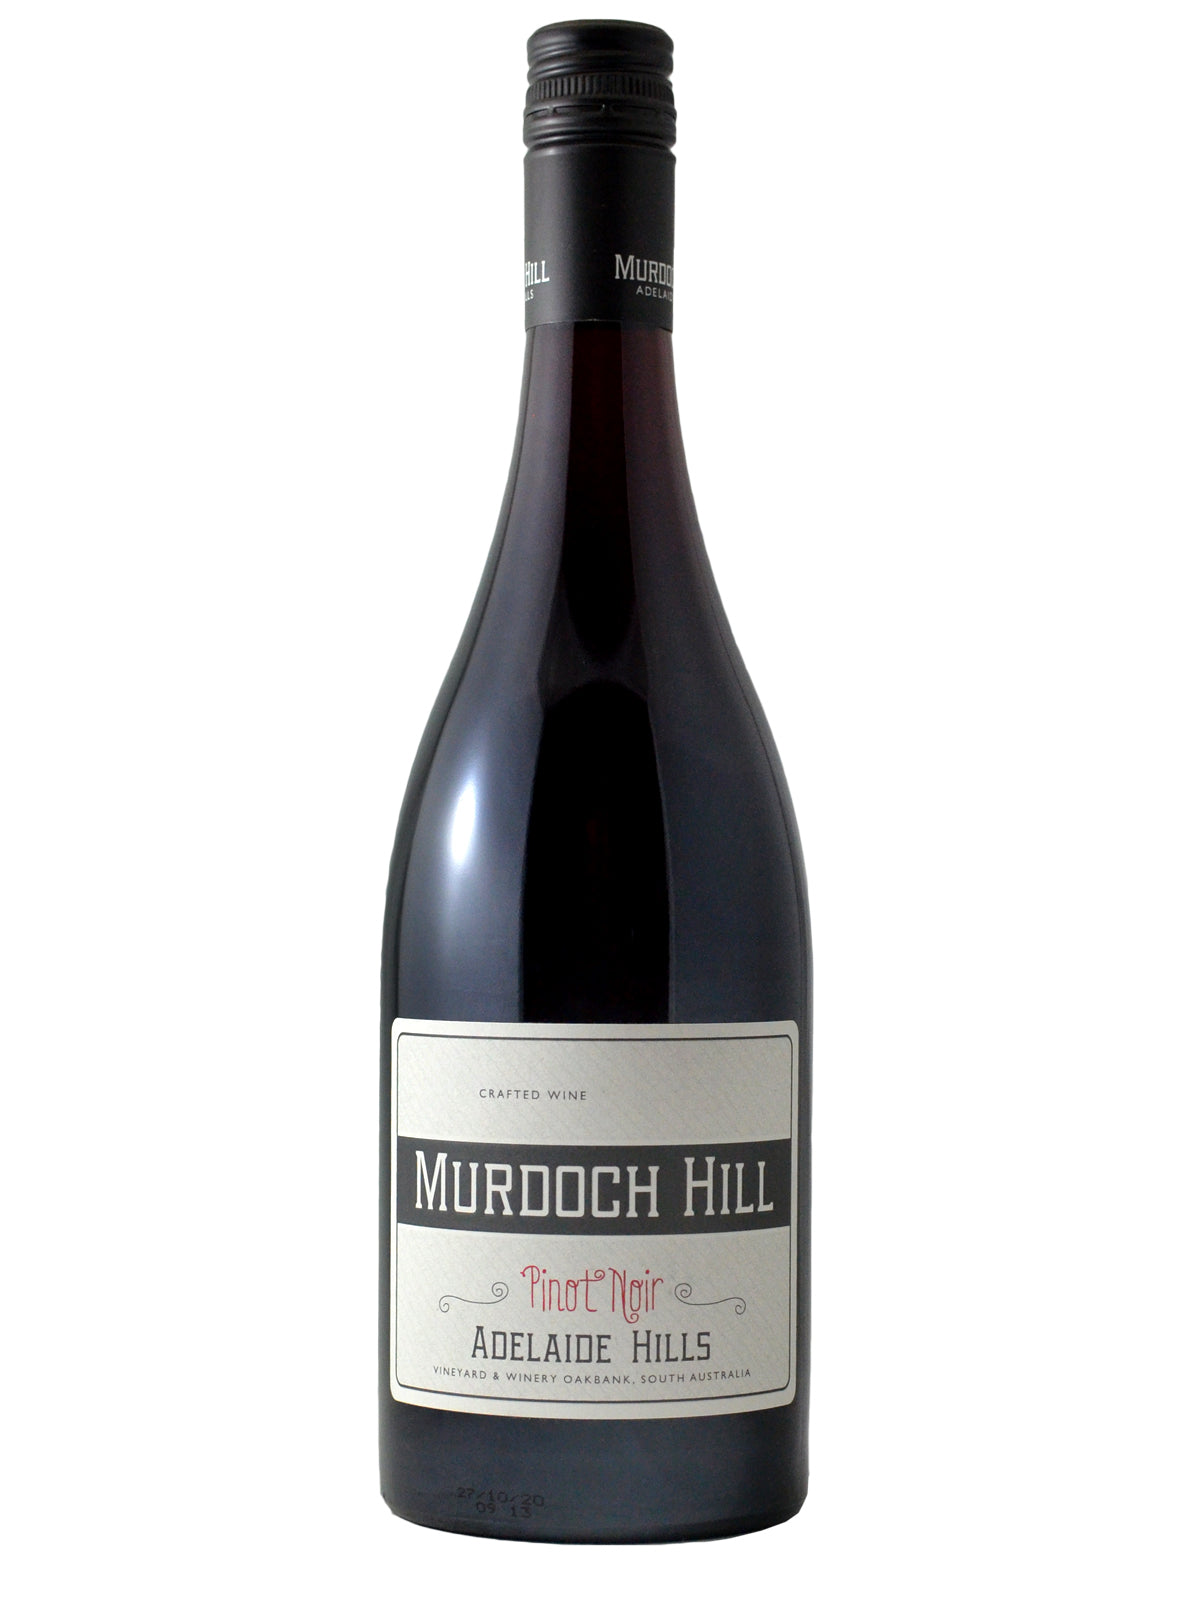 Murdoch Hill Pinot Noir